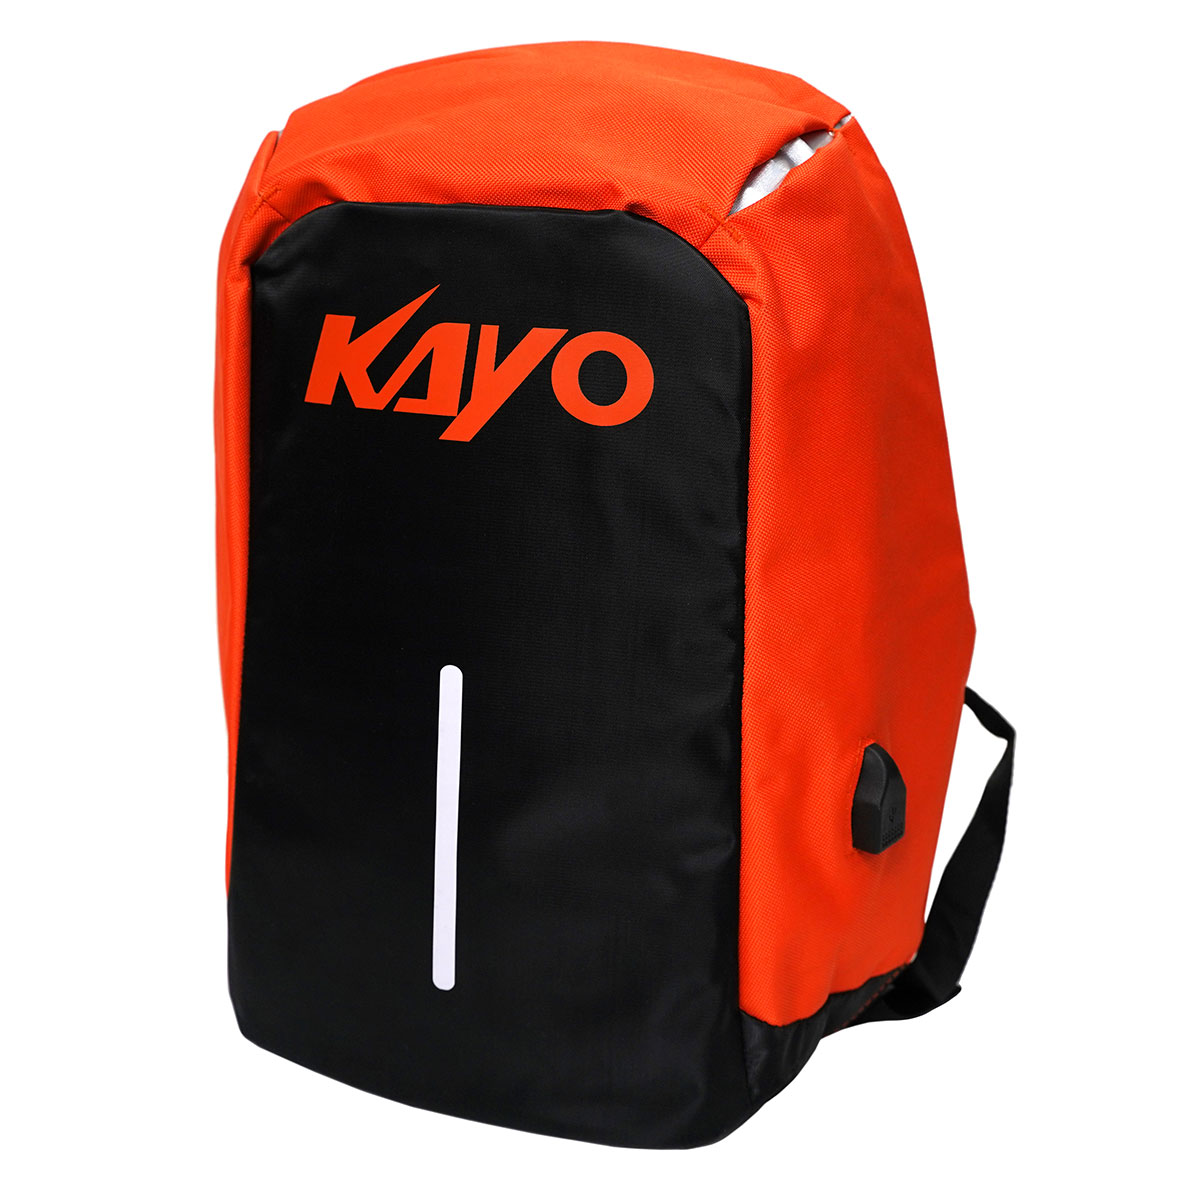  Kayo / 1560385-803-5164